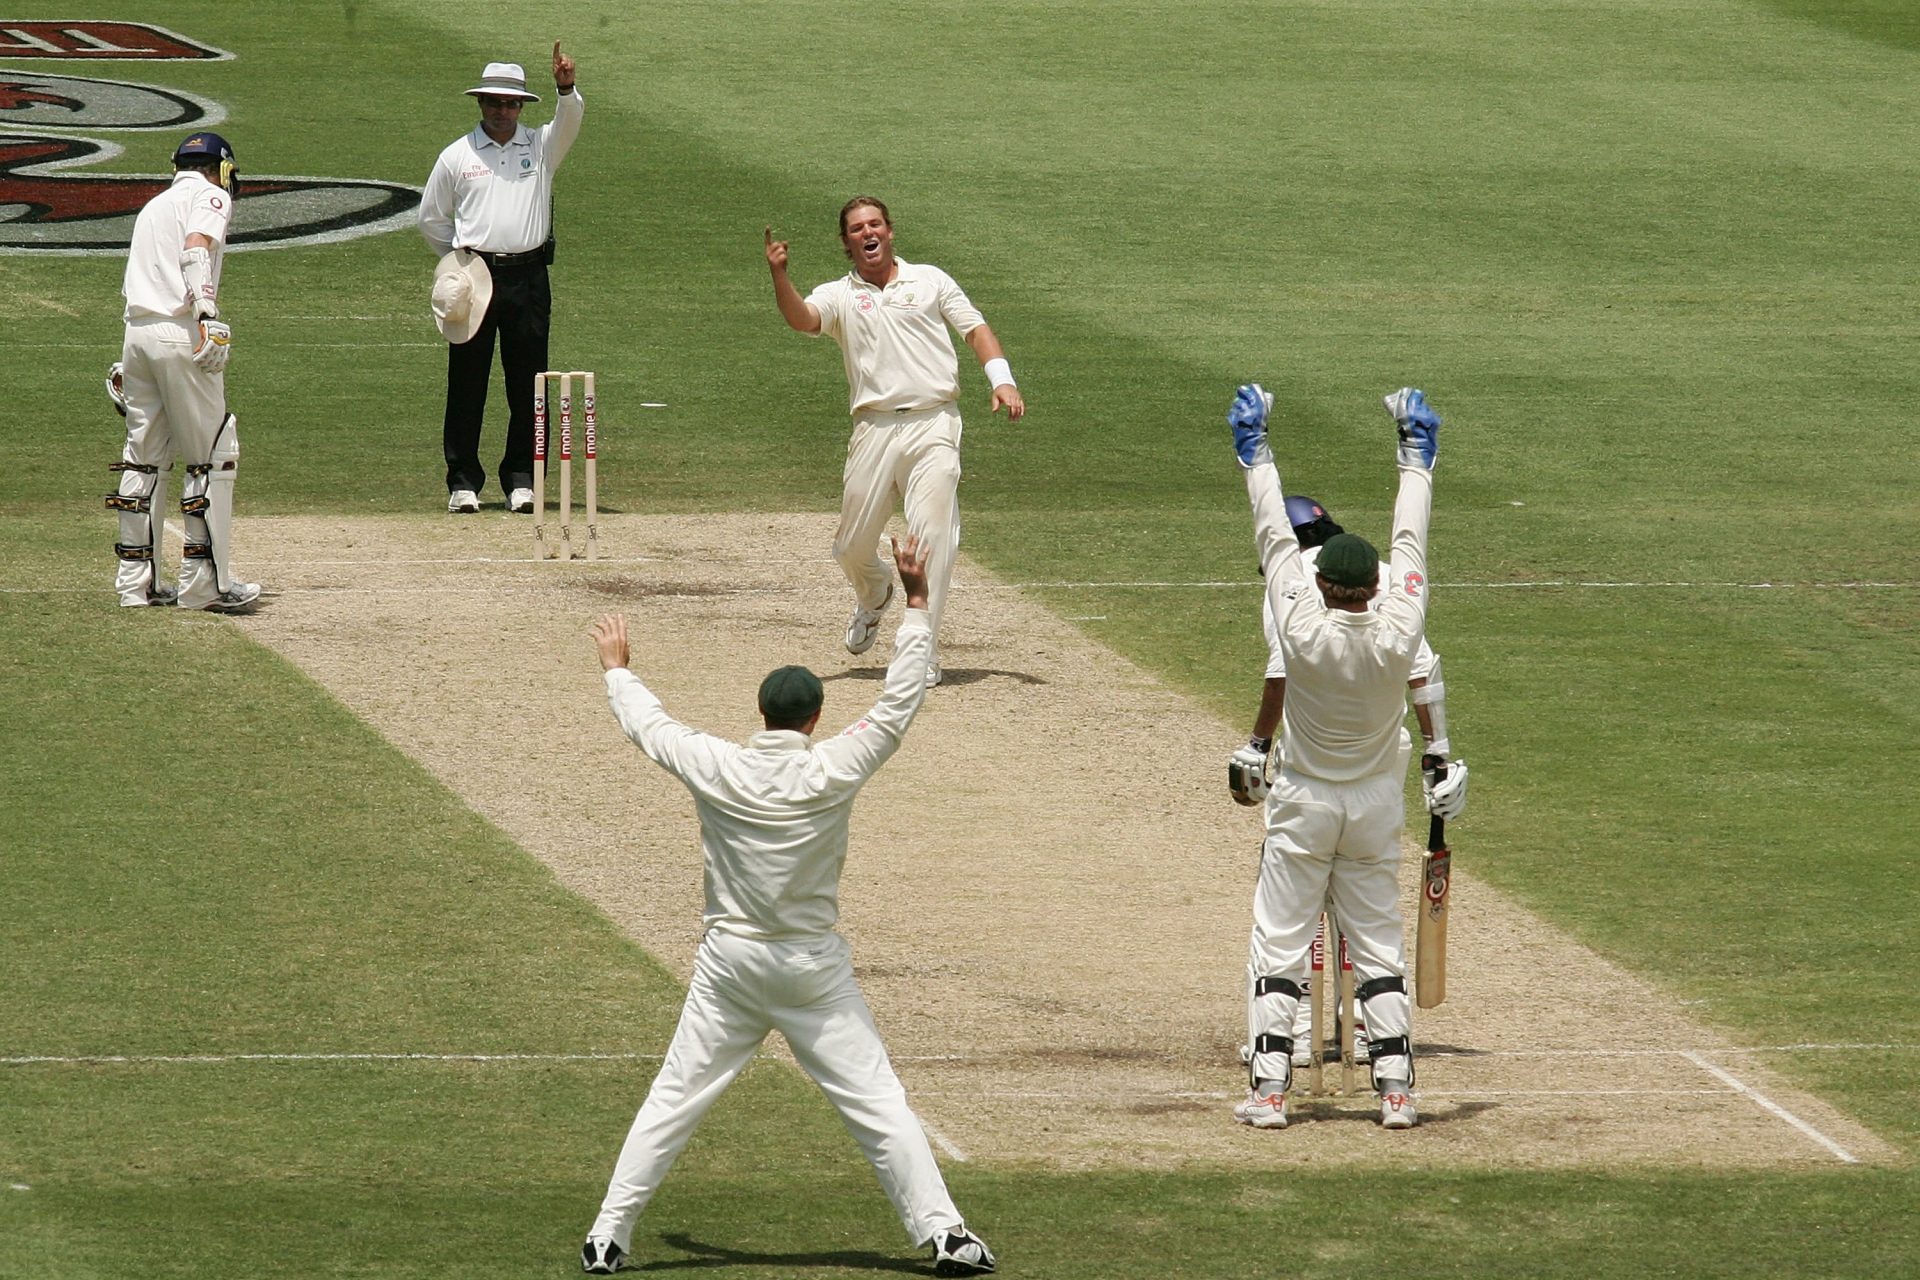 Shane Warne (708 wickets) 